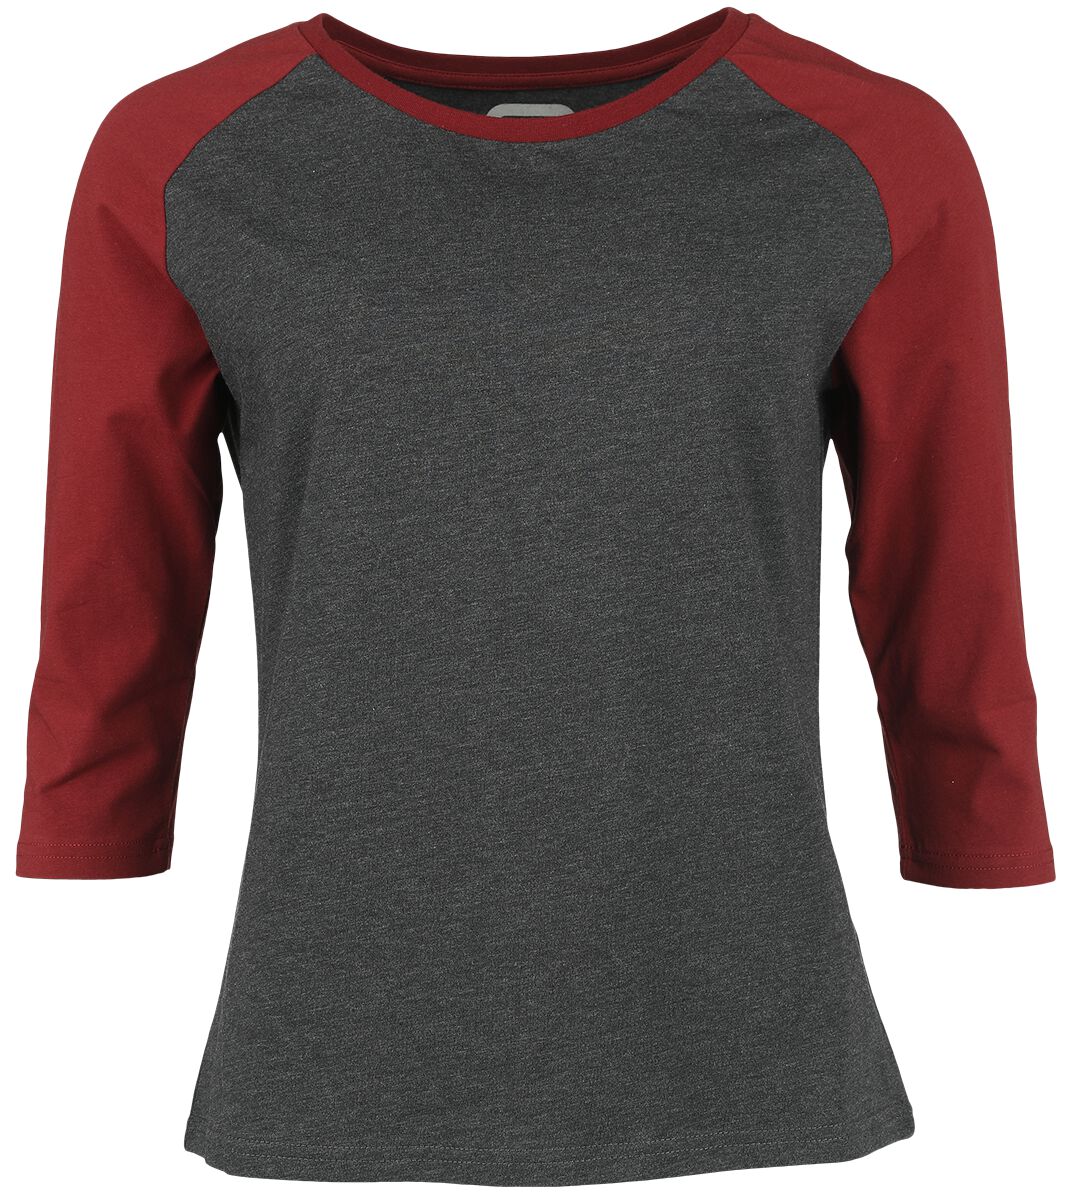 Levně RED by EMP Raglan Longsleeve Dámské tričko s dlouhými rukávy šedá melírovaná / červená